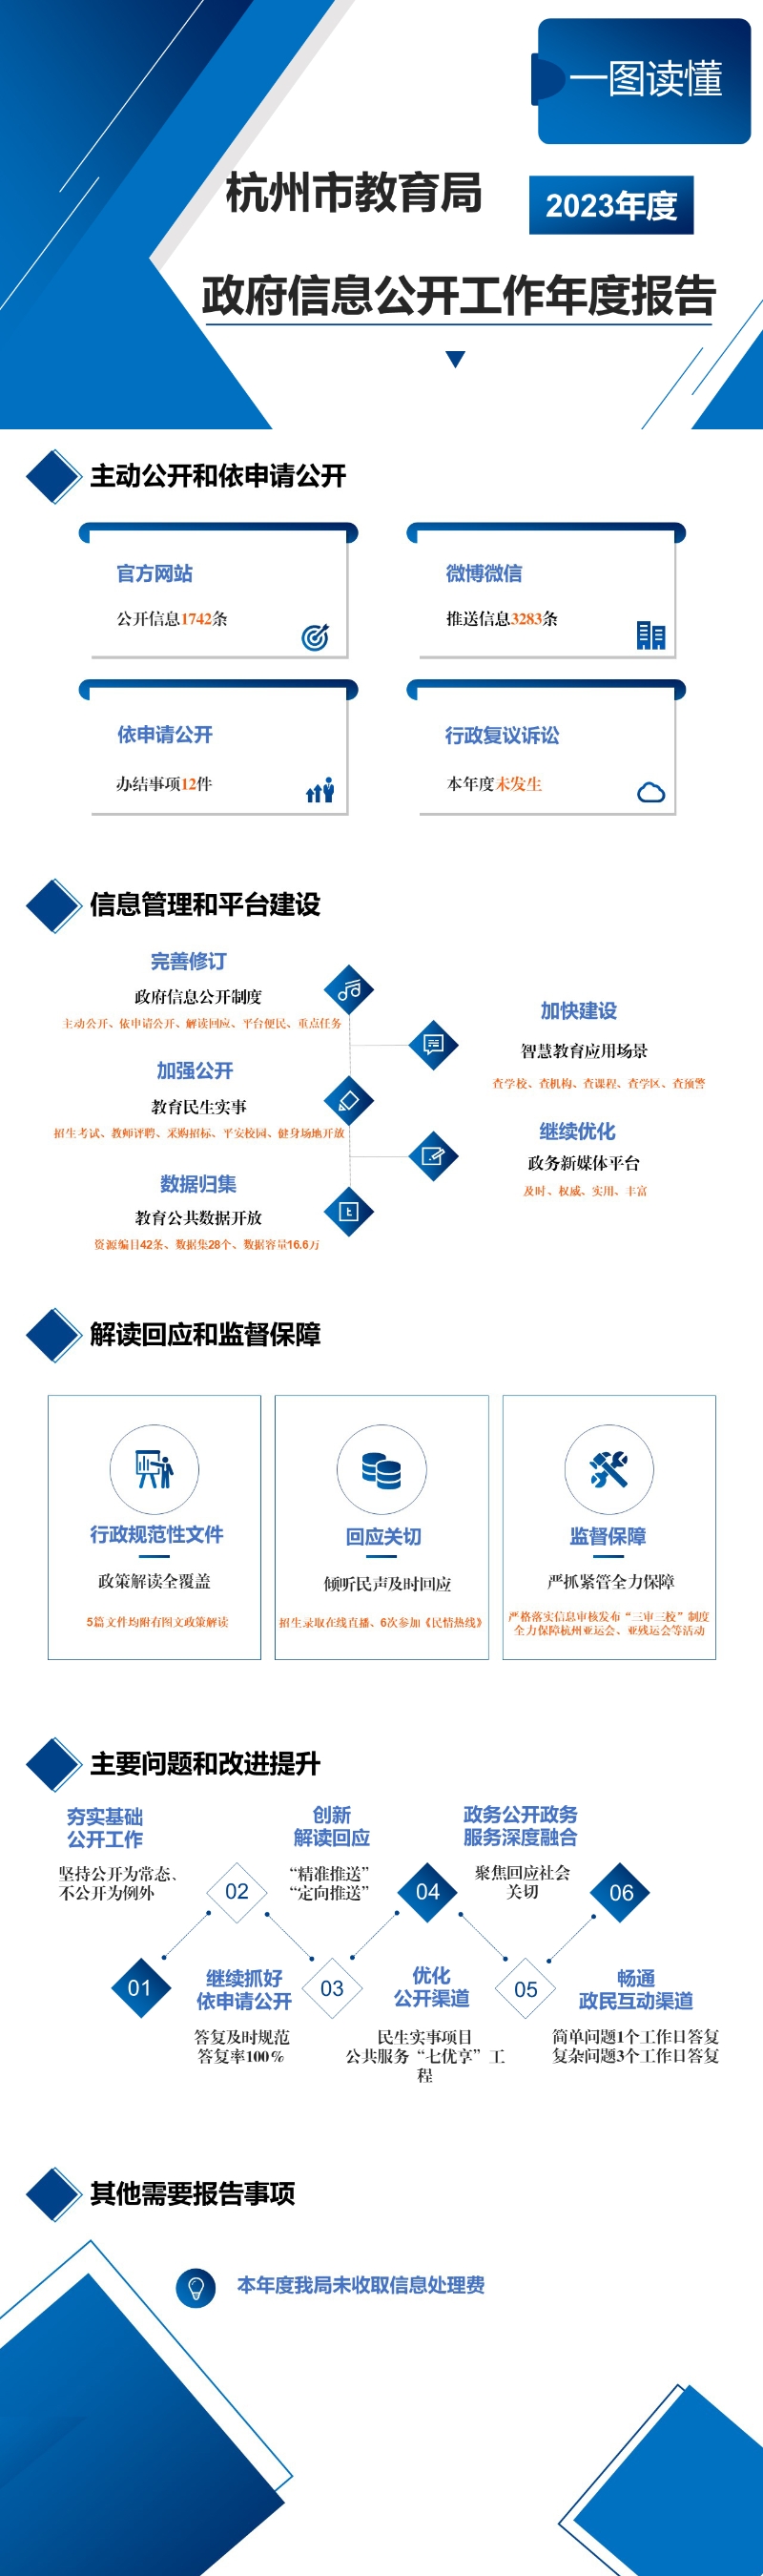 图解-杭州市教育局2023年度政府信息公开工作年度报告.jpg